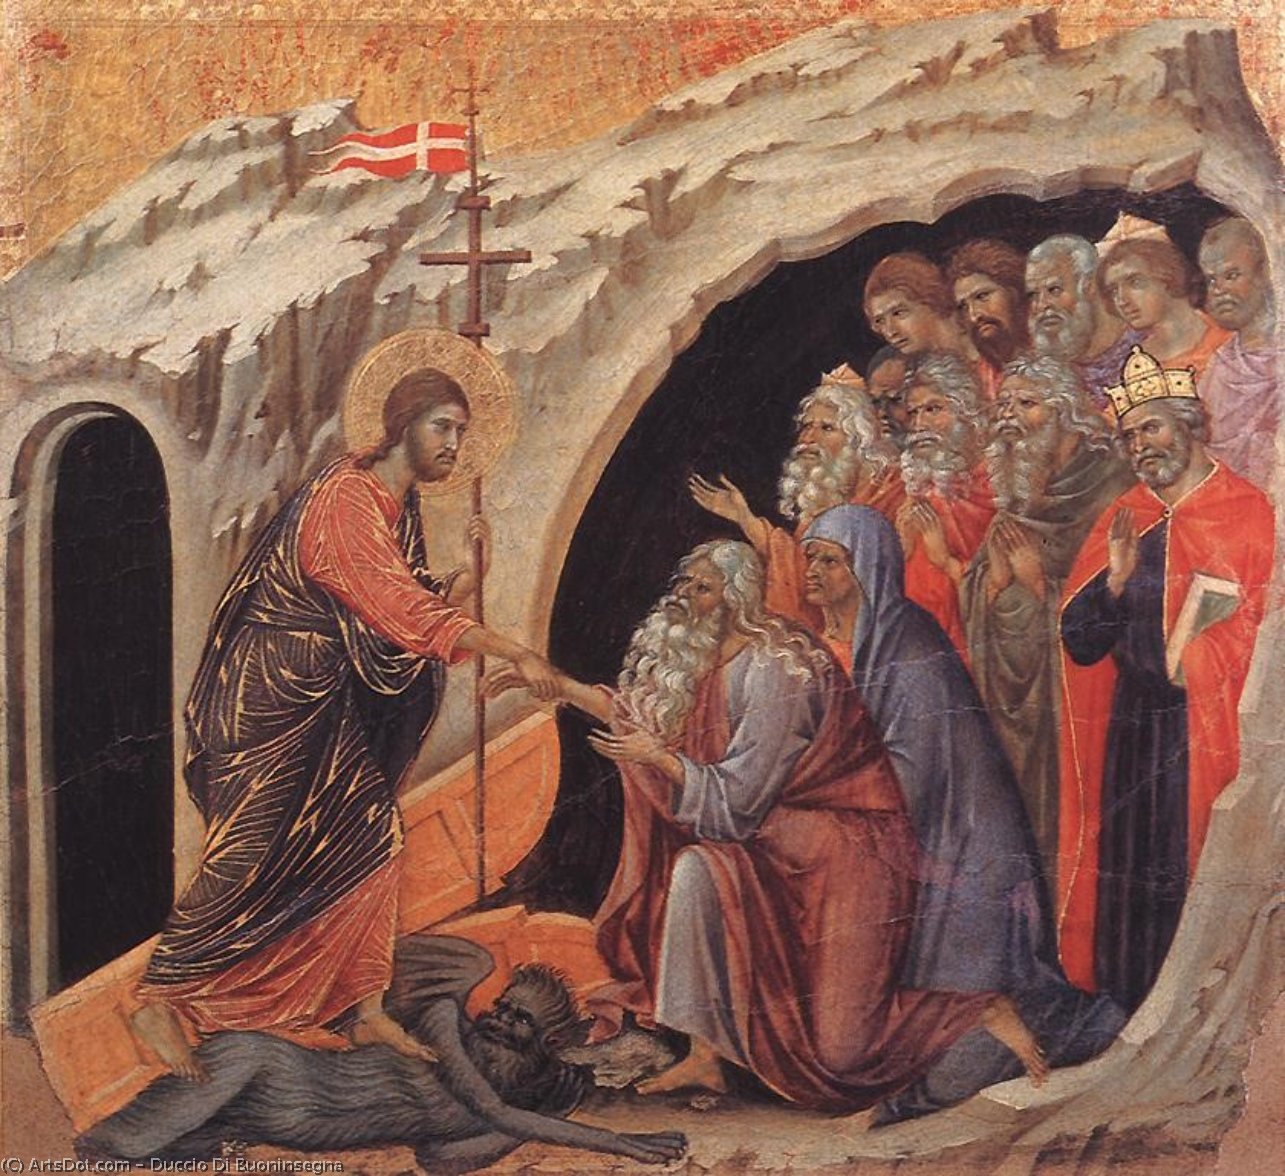 WikiOO.org - Encyclopedia of Fine Arts - Maleri, Artwork Duccio Di Buoninsegna - Descent to Hell